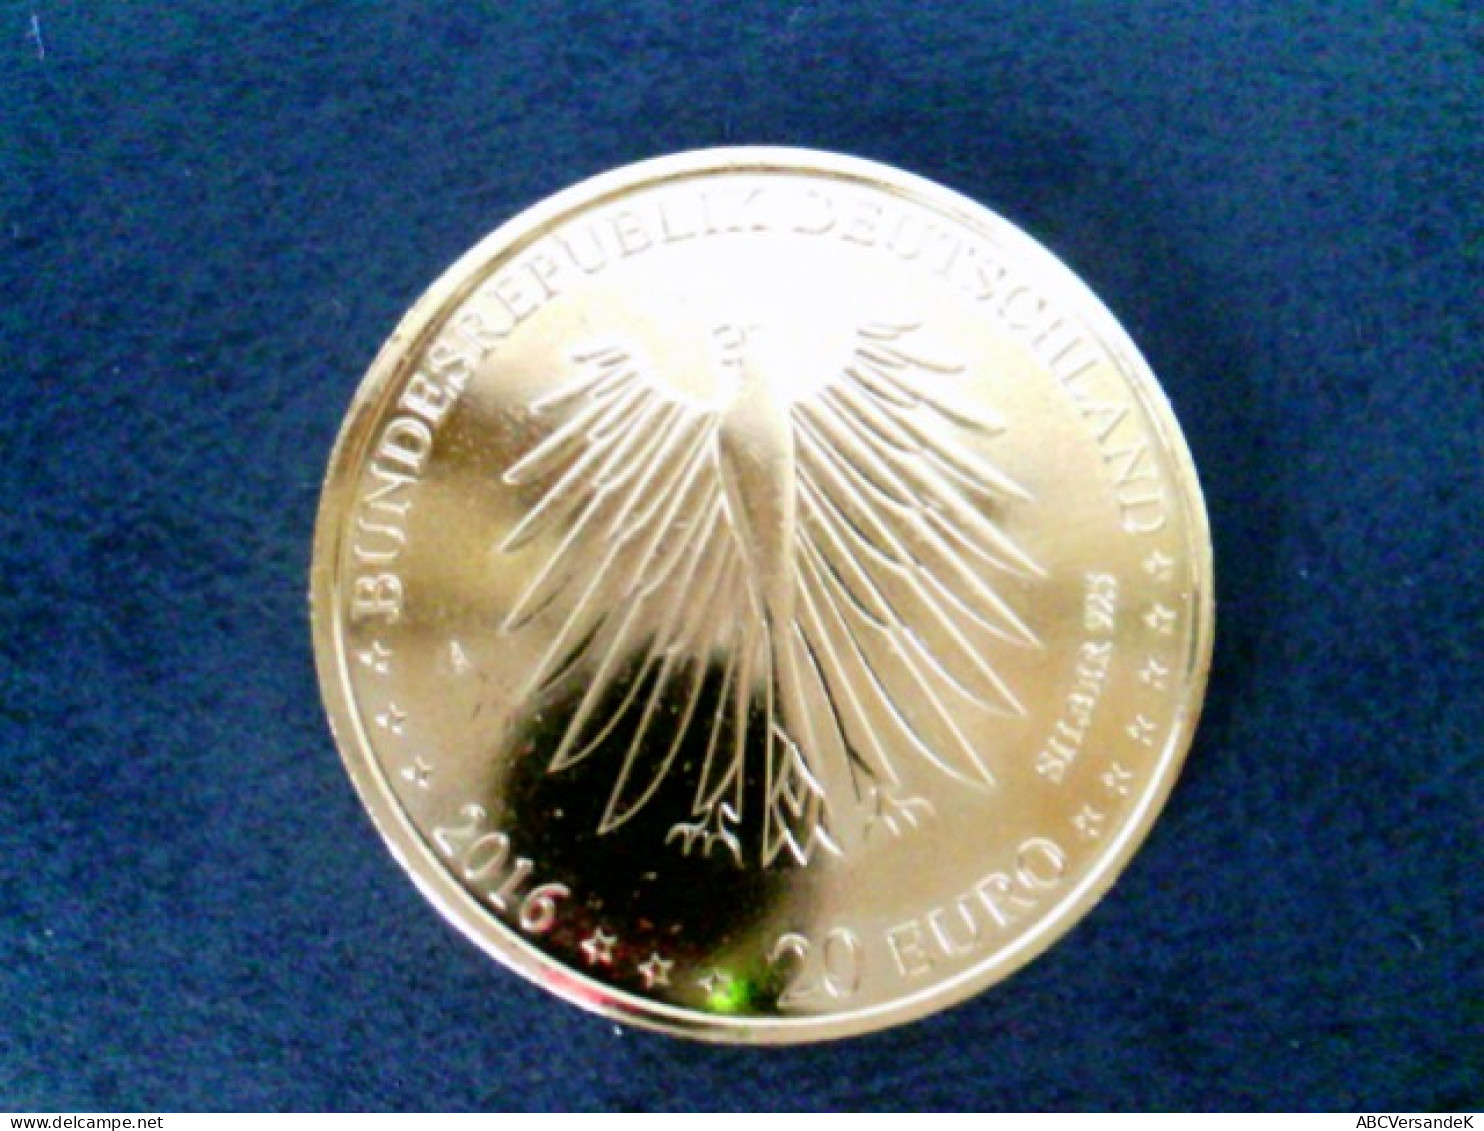 Münzen/ Medaillen: 1 Münze 20 Euro Nelly Sachs, 925 Silber, Vergoldet Mit 24 Karat Goldauflage, In Kapsel - Numismática